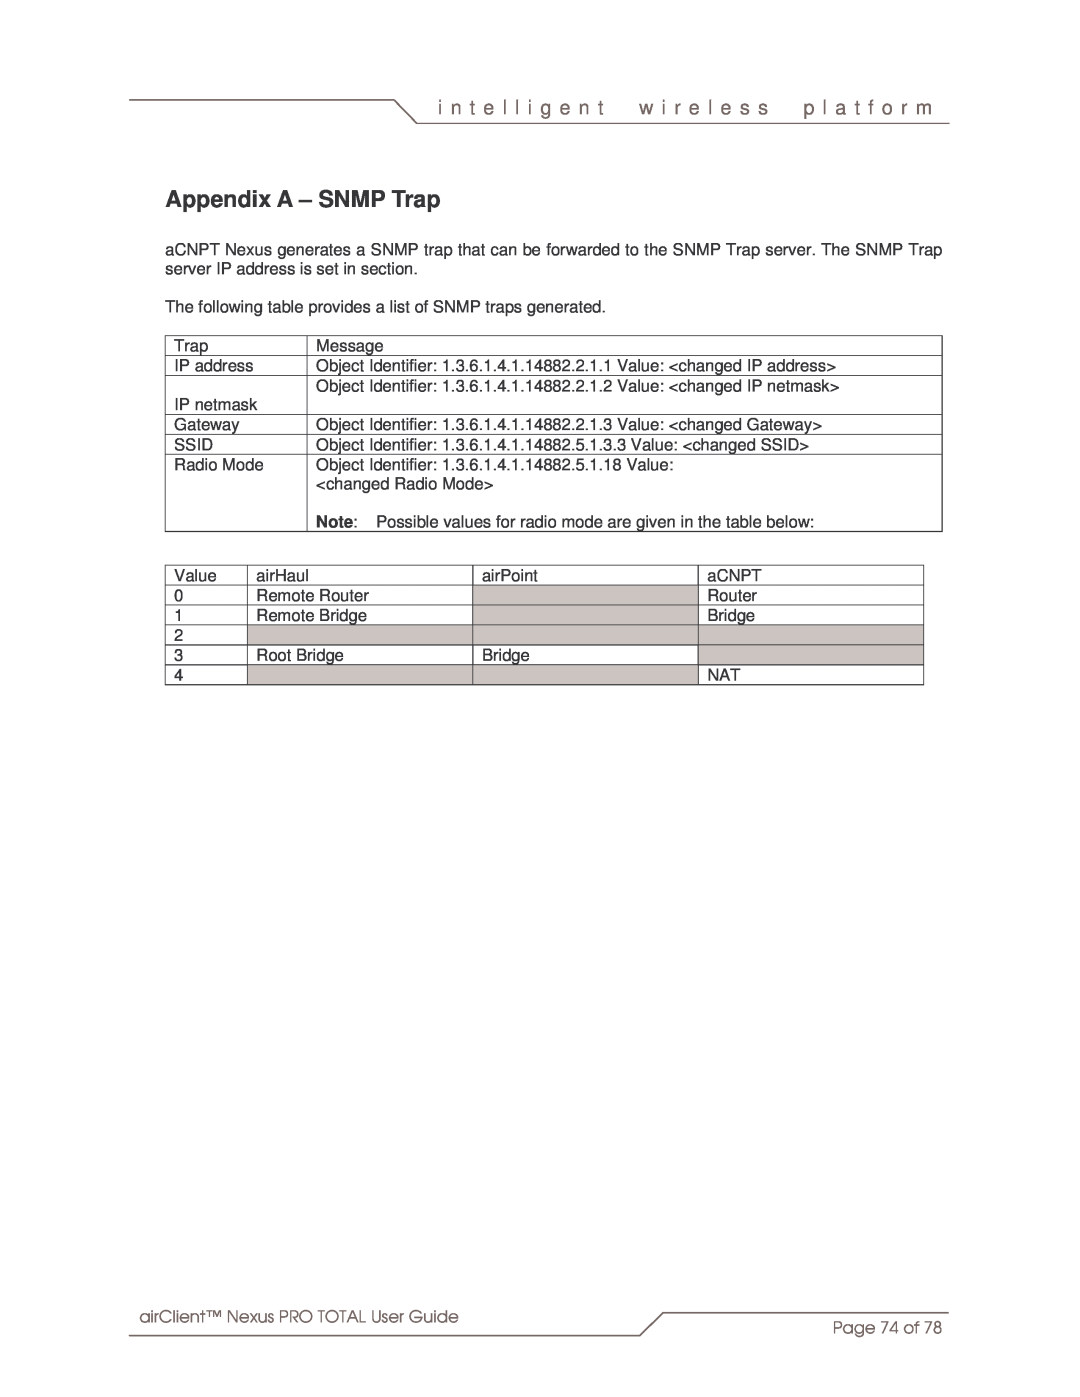 SmartBridges sB3412 manual Appendix A - SNMP Trap, i n t e l l i g e n t, w i r e l e s s, p l a t f o r m, Page 74 of 